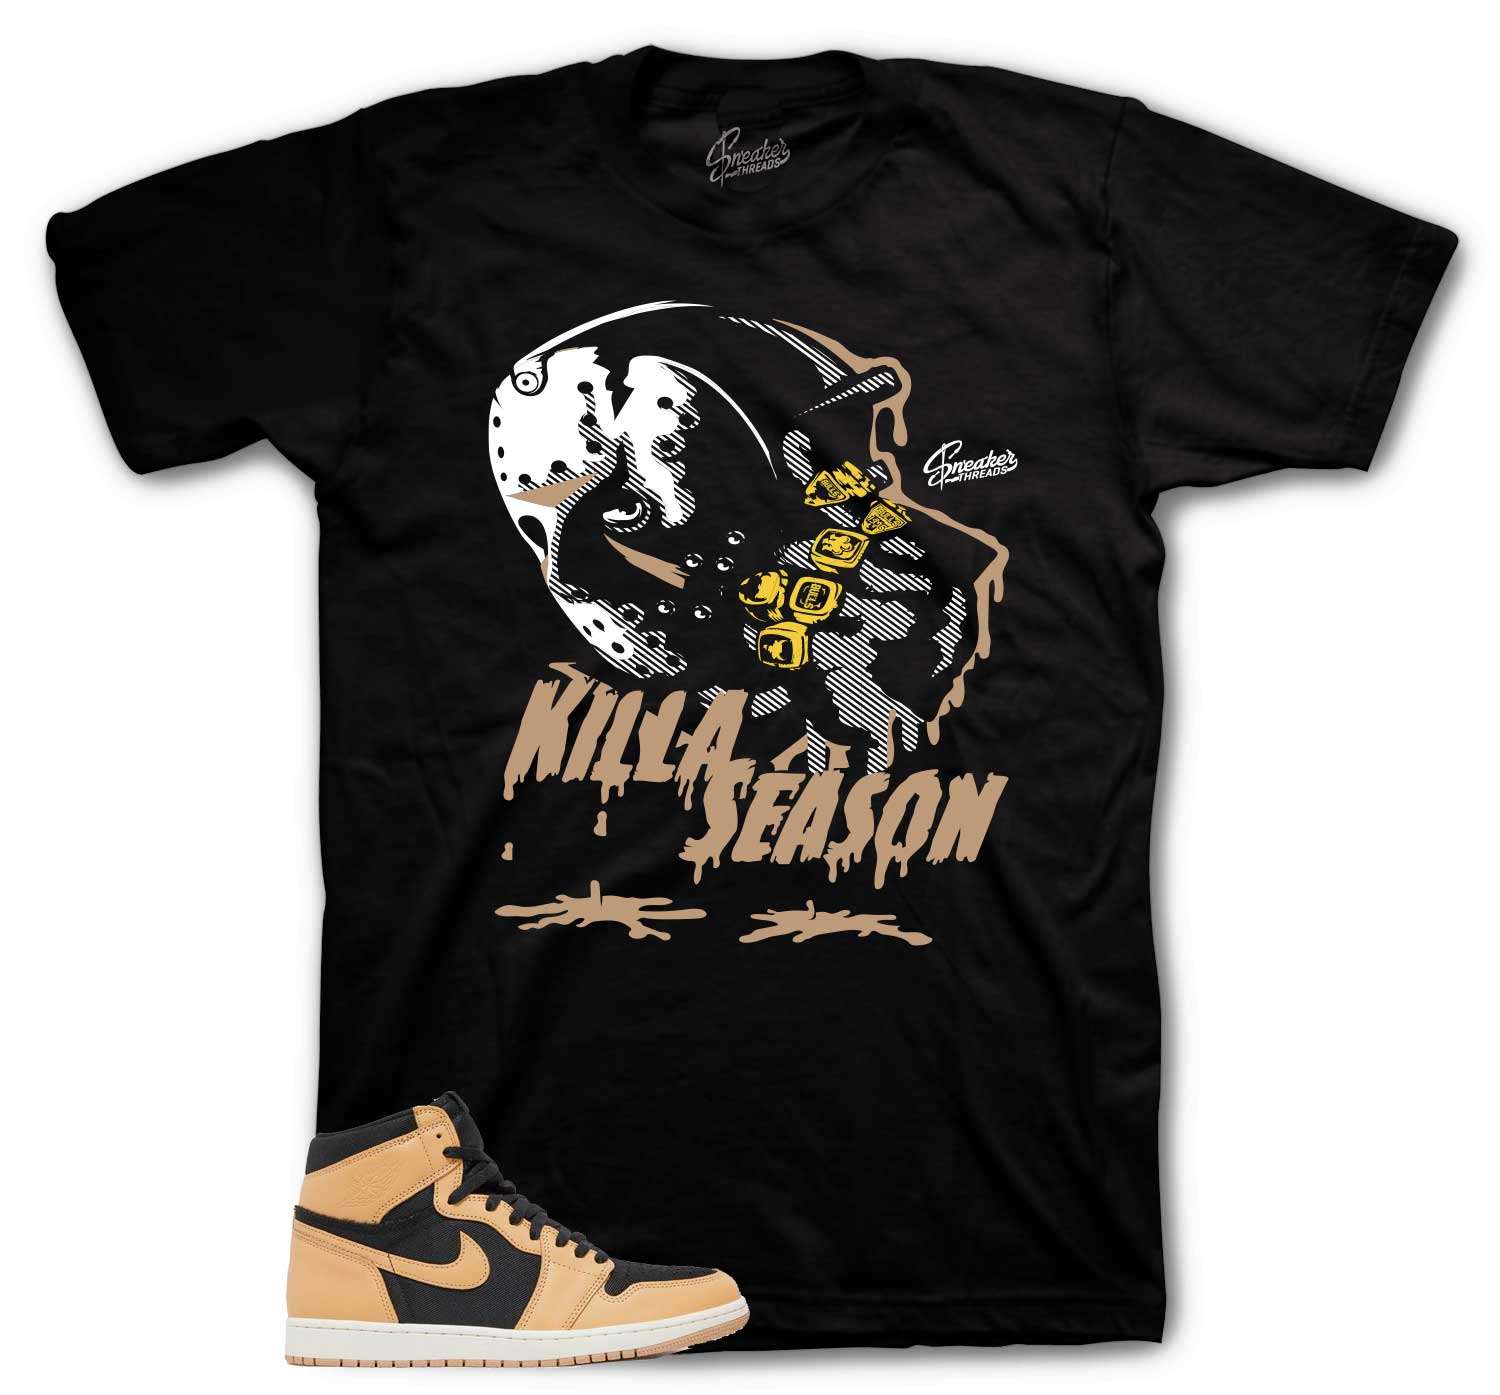 Retro 1 Heirloom Shirt - Killa Season - Black